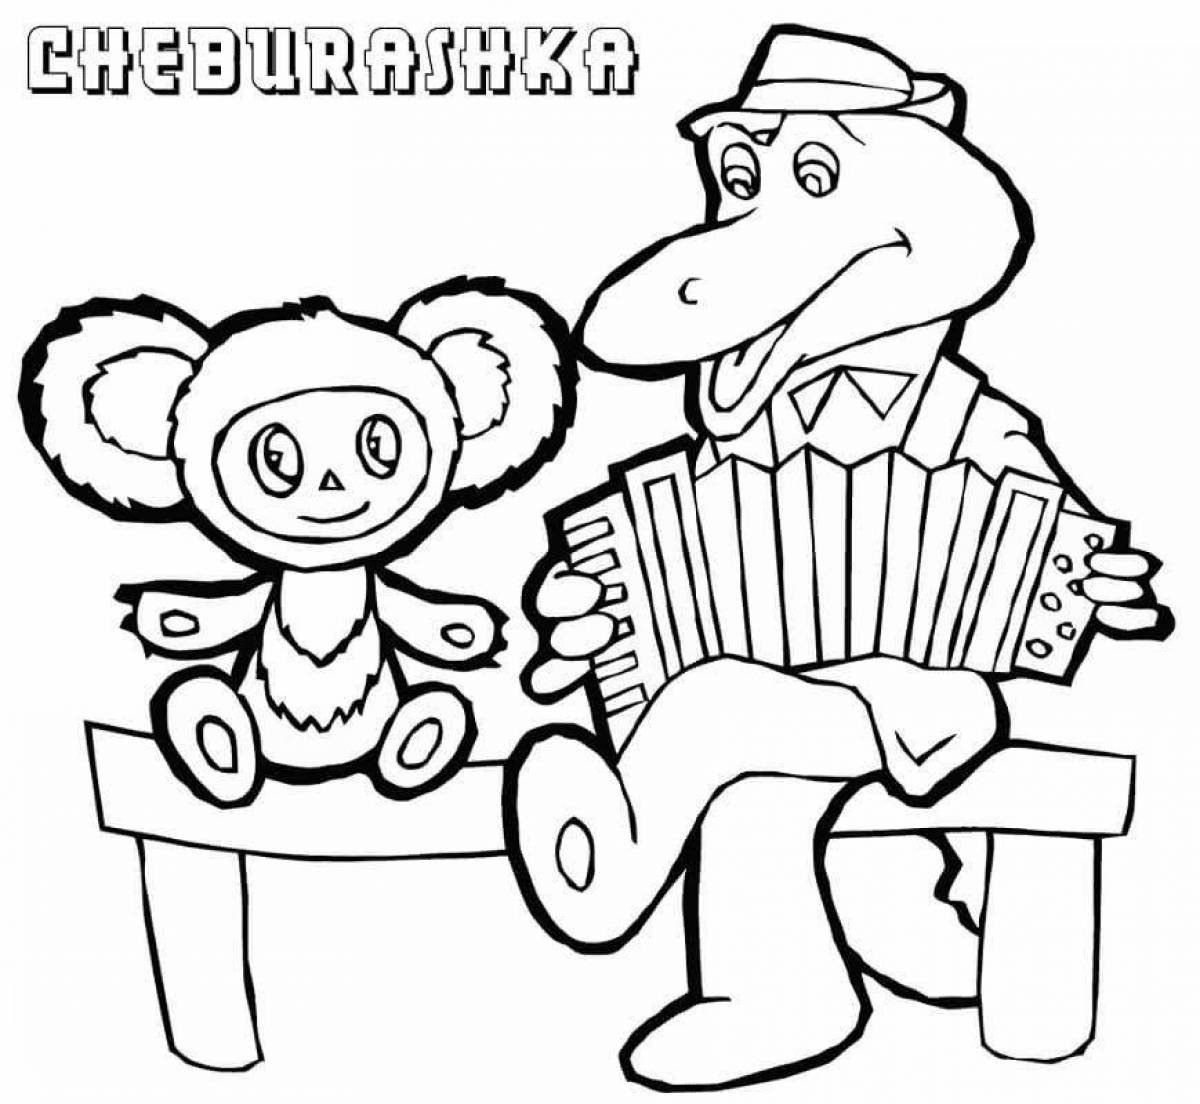 Live cheburashka picture for children